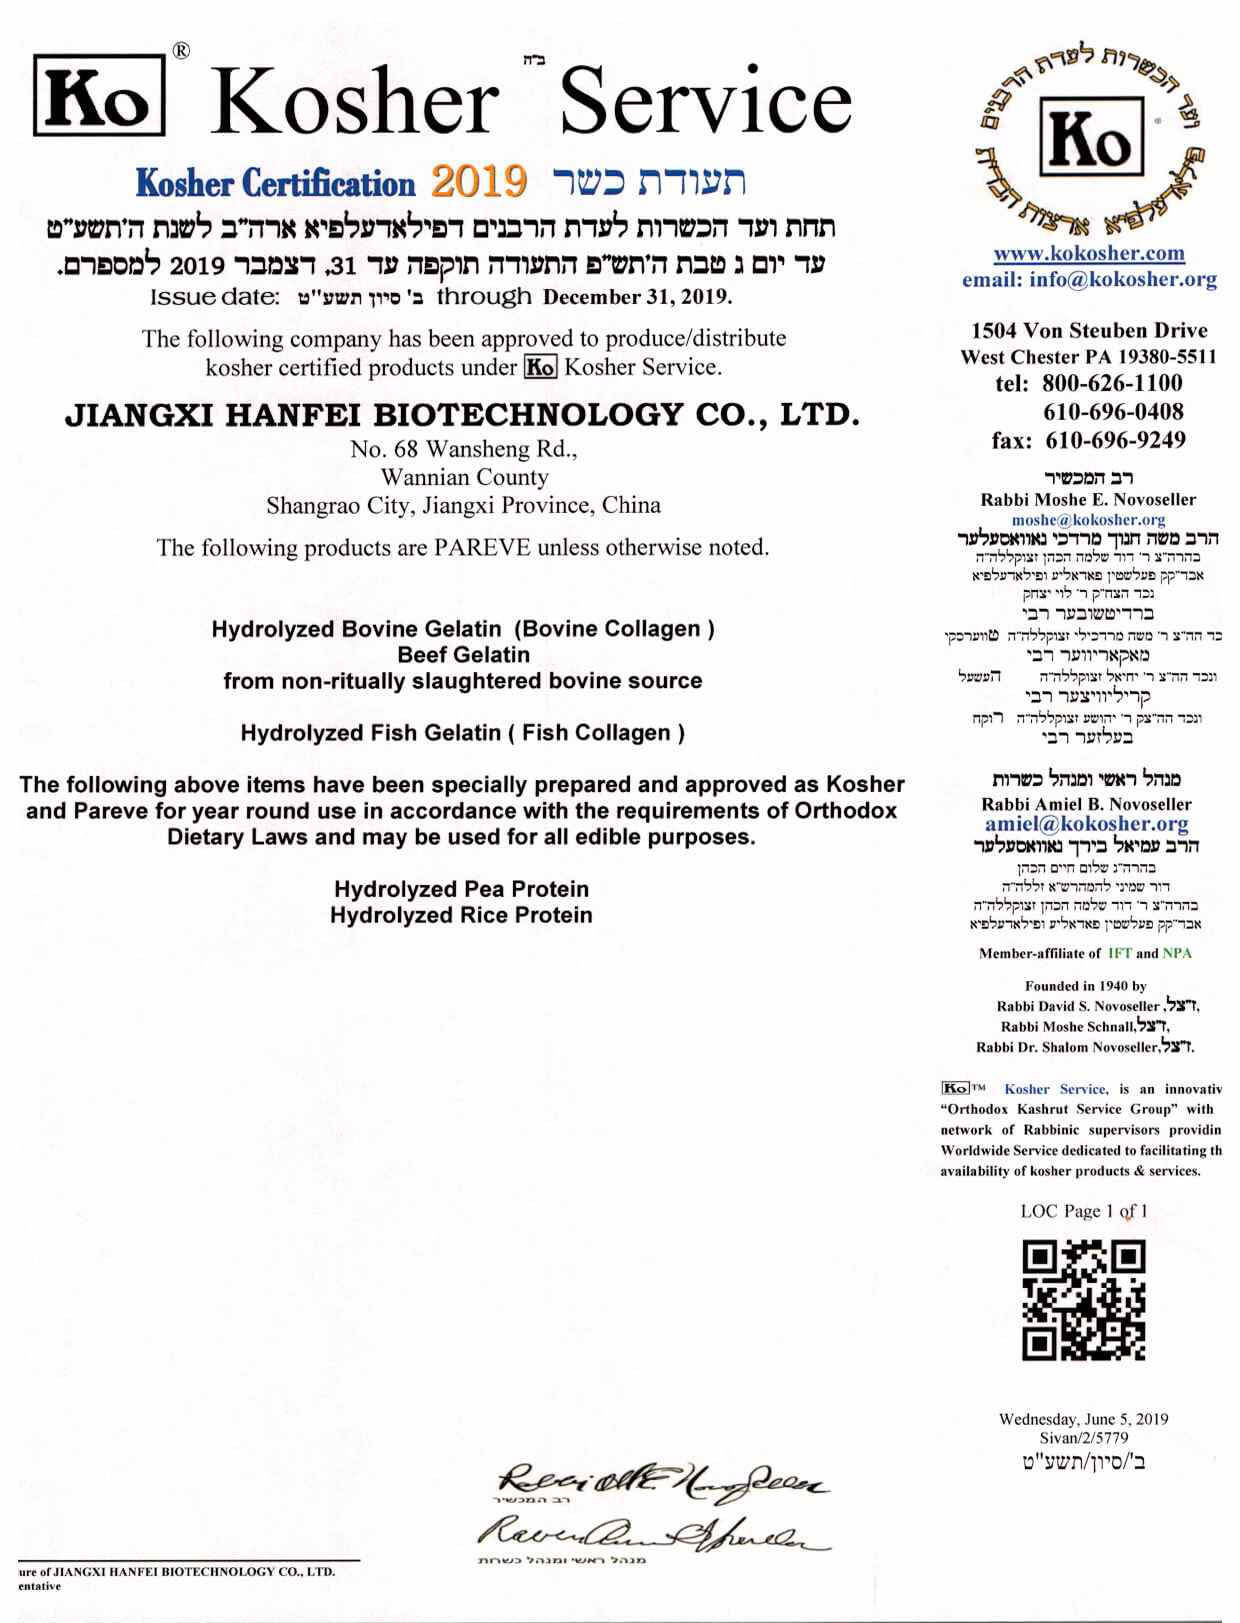 Jiangxi Hanfei Biotechnology Co.,Ltd Certifications